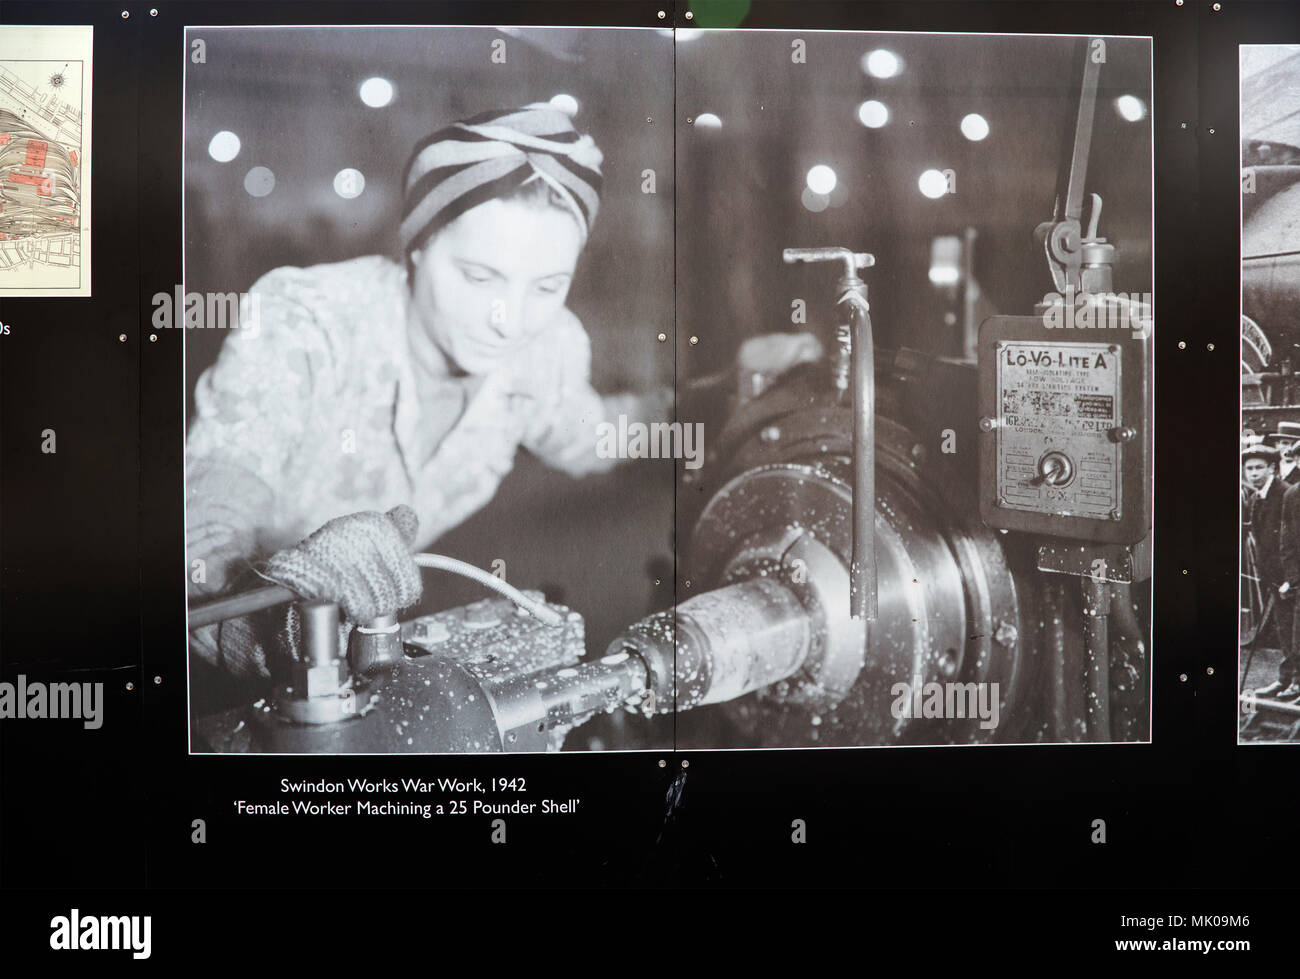 Public display del vecchio e storico immagini sulle opere di GWR, Swindon, Wiltshire, Inghilterra, Regno Unito - lavoratore di sesso femminile che la lavorazione a macchina di un 25 pounder shell 1942 Foto Stock